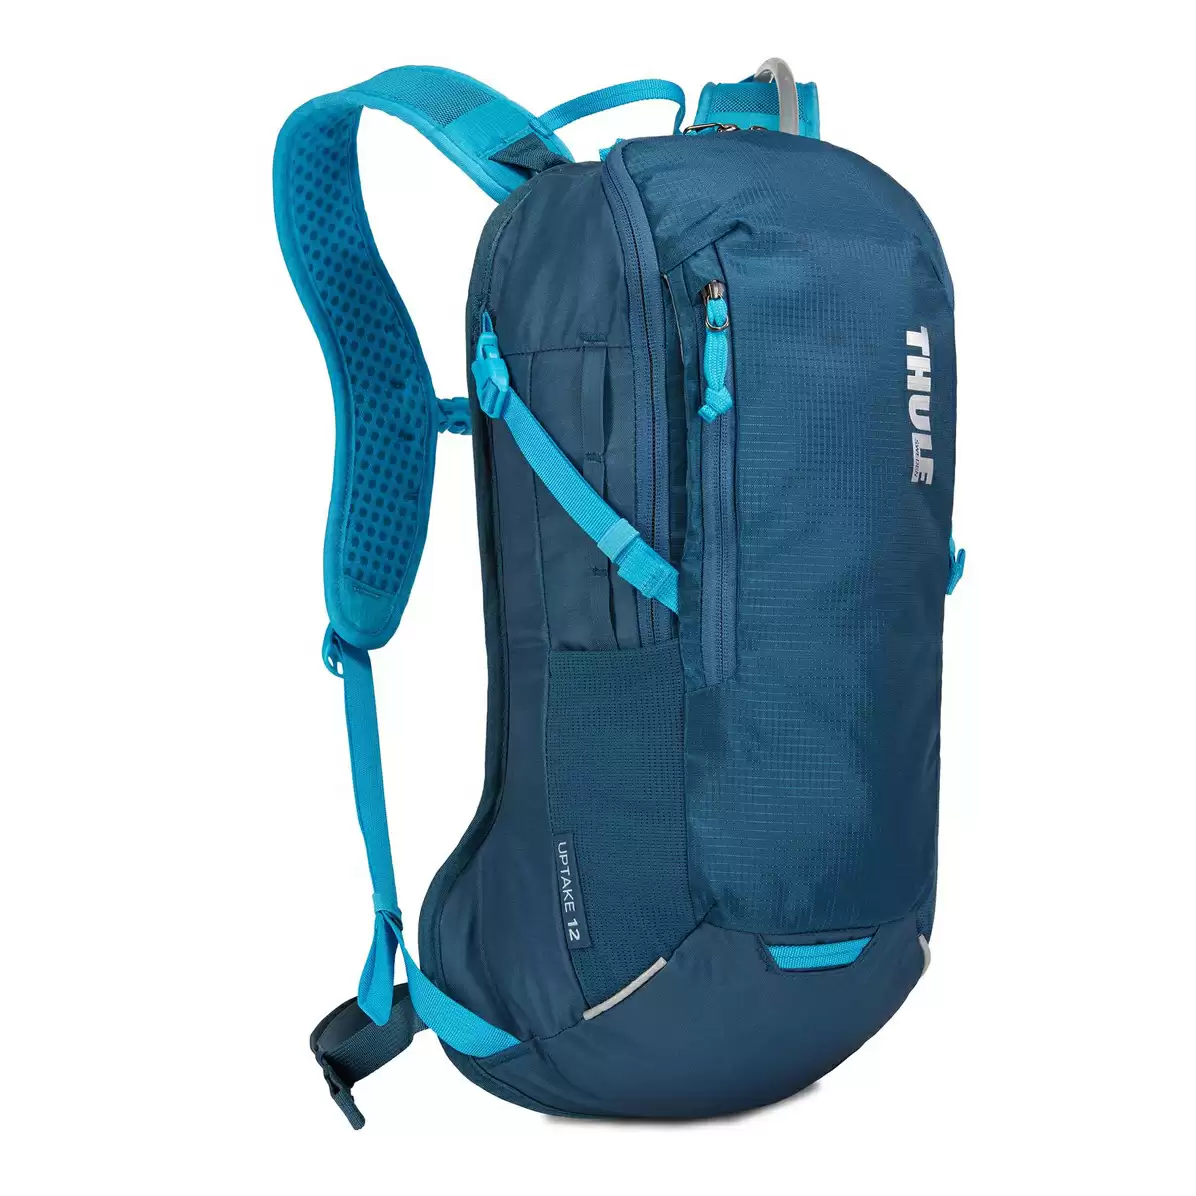 Water backpack UpTake 12L blu - image